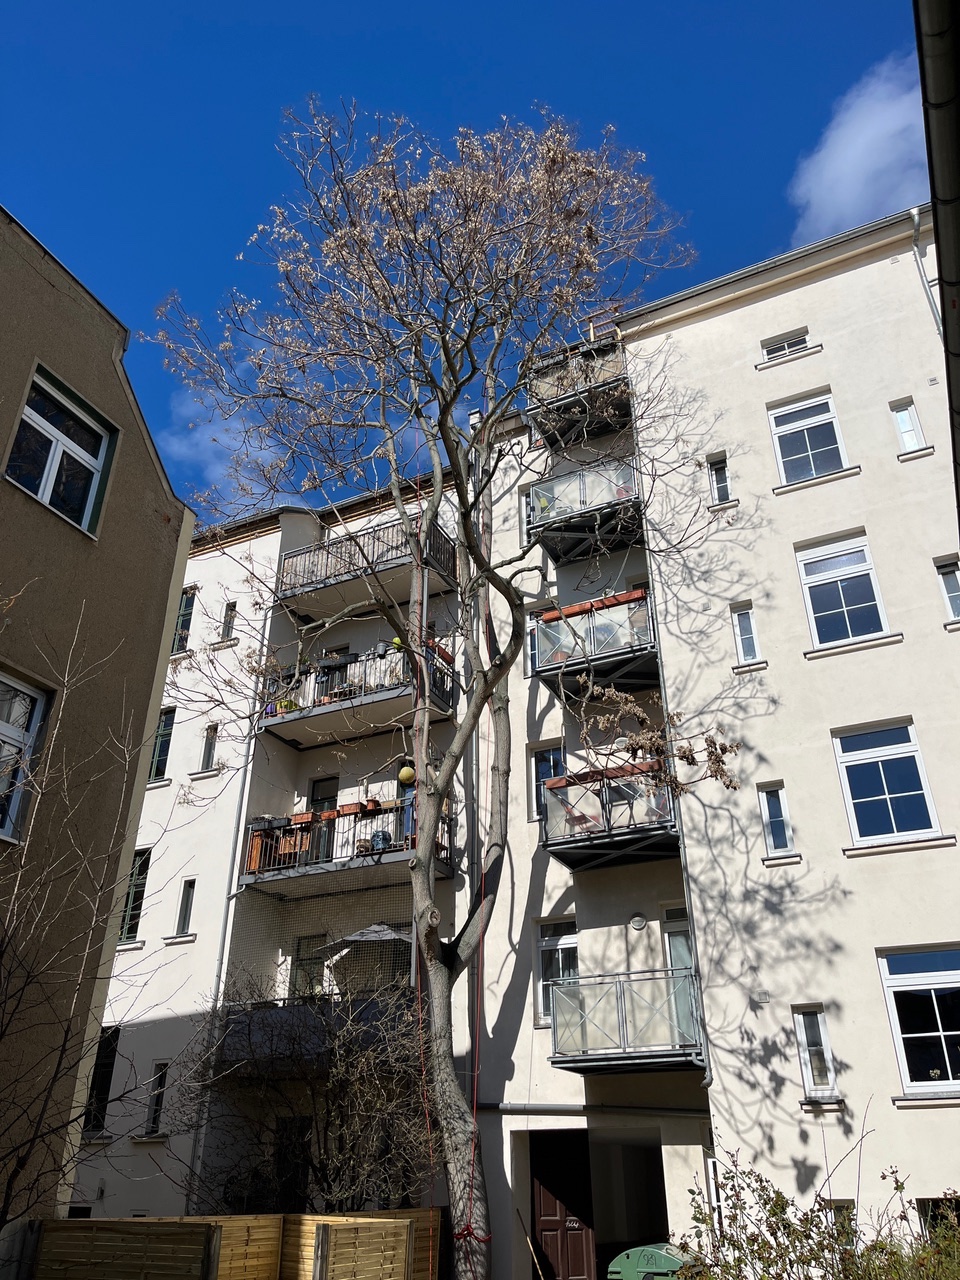 Kronenpflege eines Götterbaumes in Leipzig